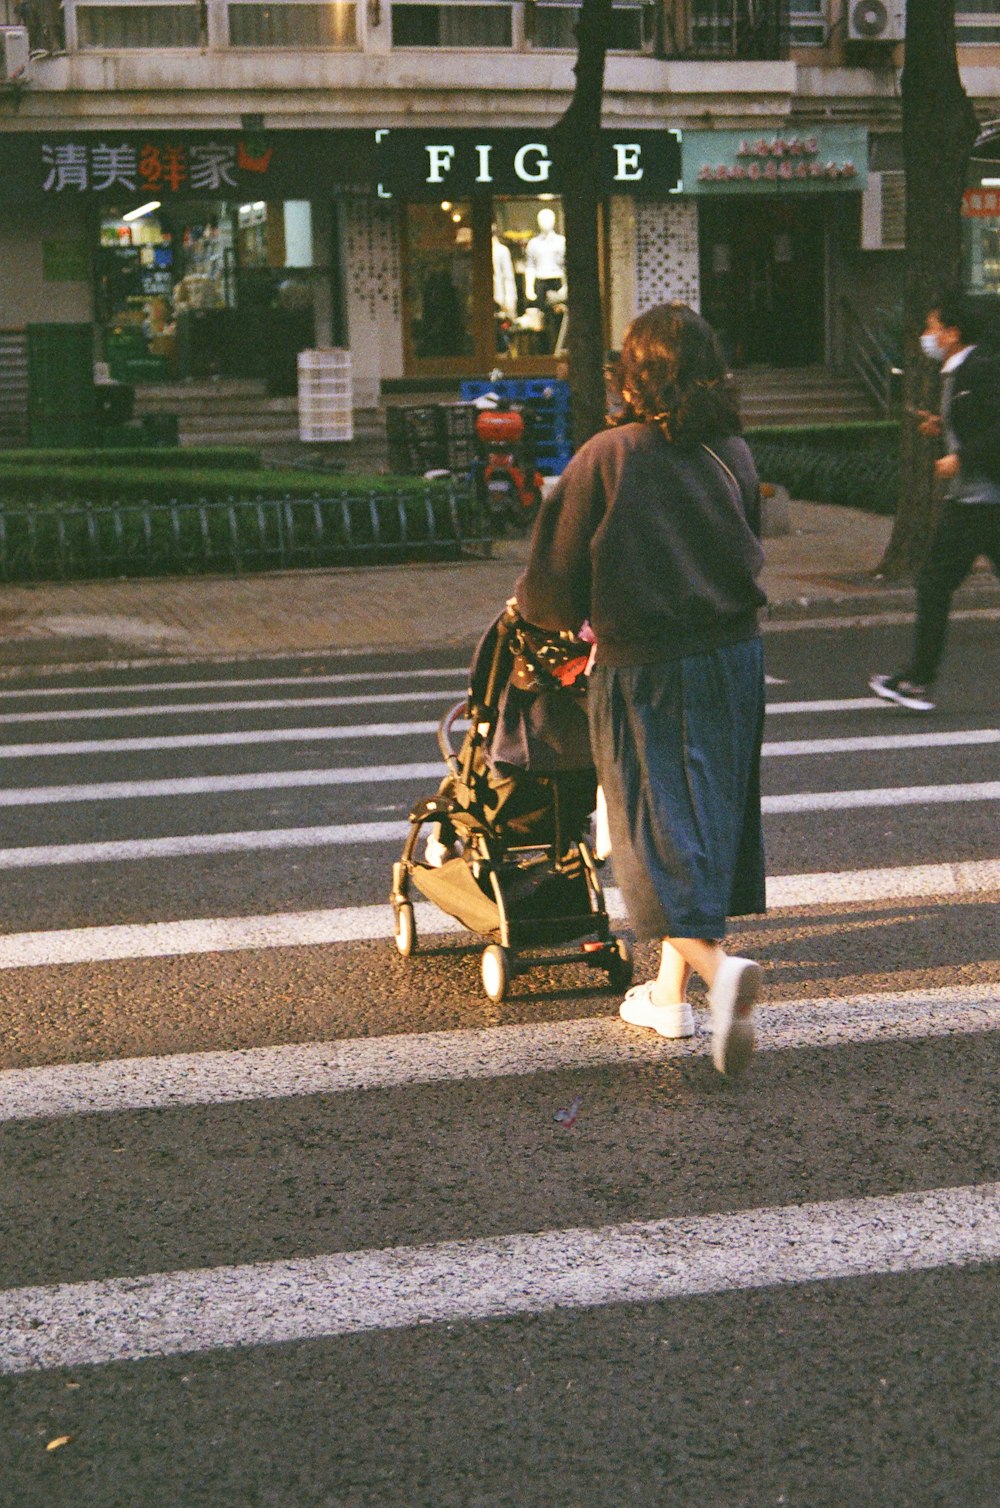 a person walking a stroller across a crosswalk